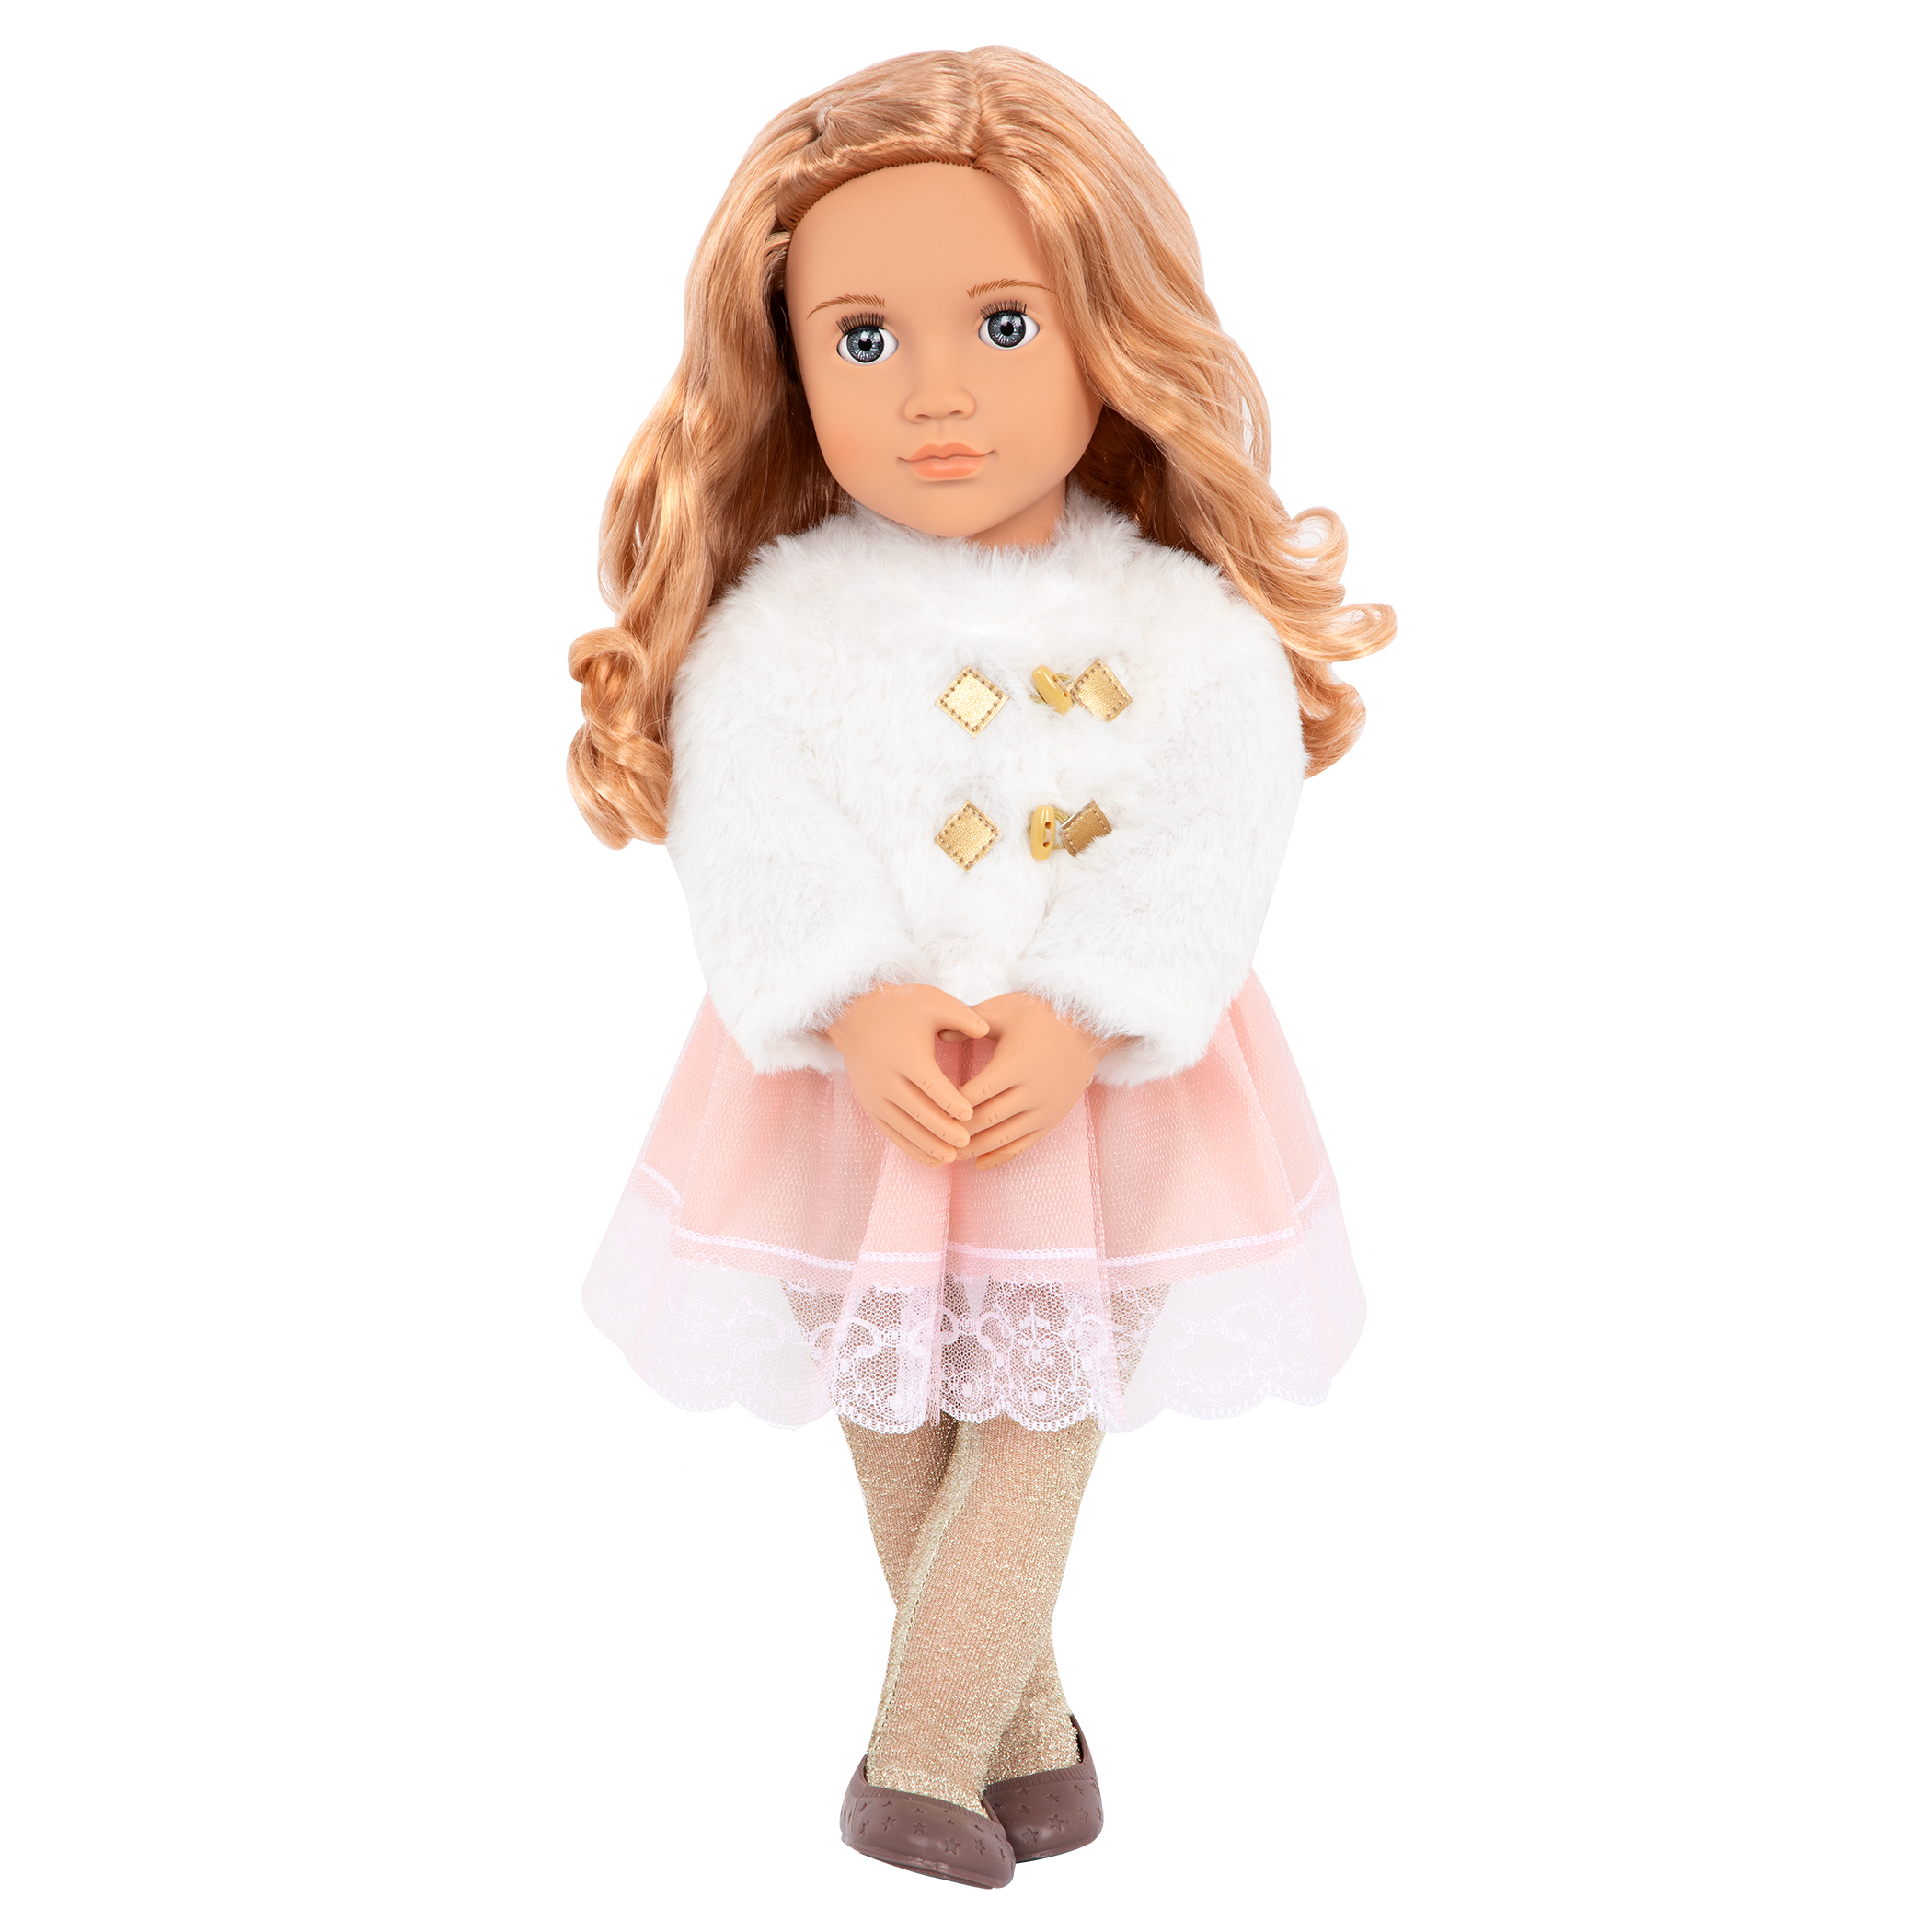 Halia 18-inch Holiday Doll